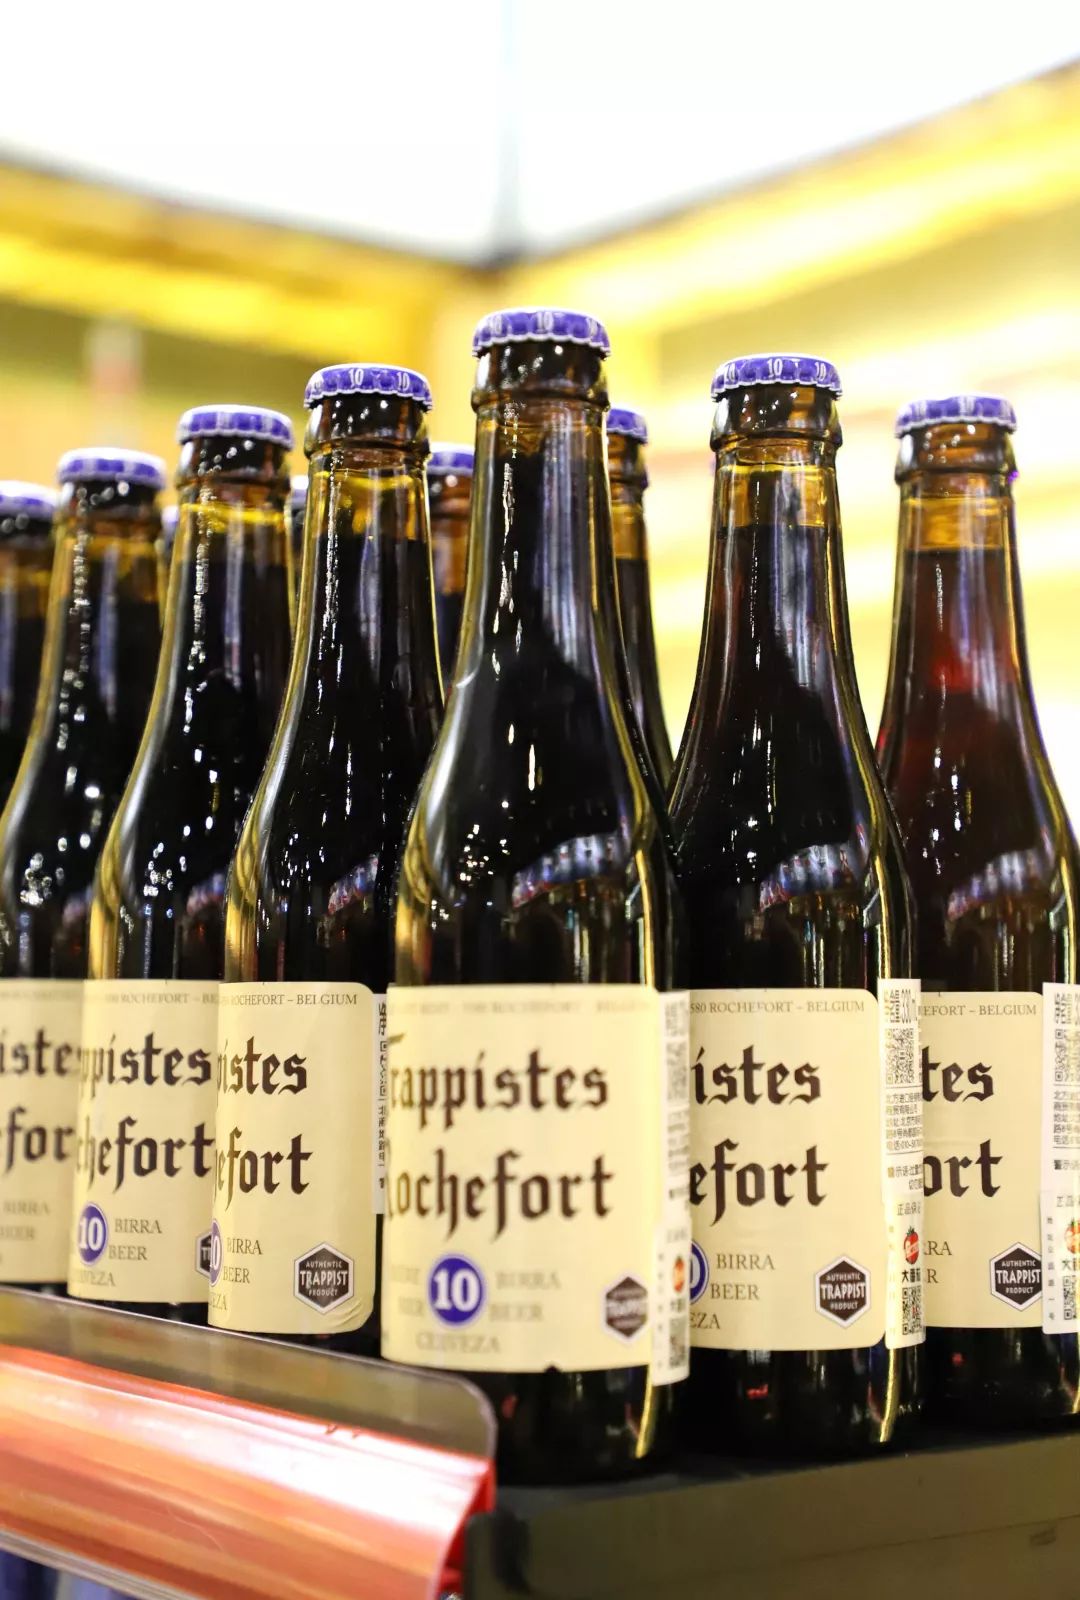 罗斯福10号是具有代表性的比利时四料,酒精度达到11